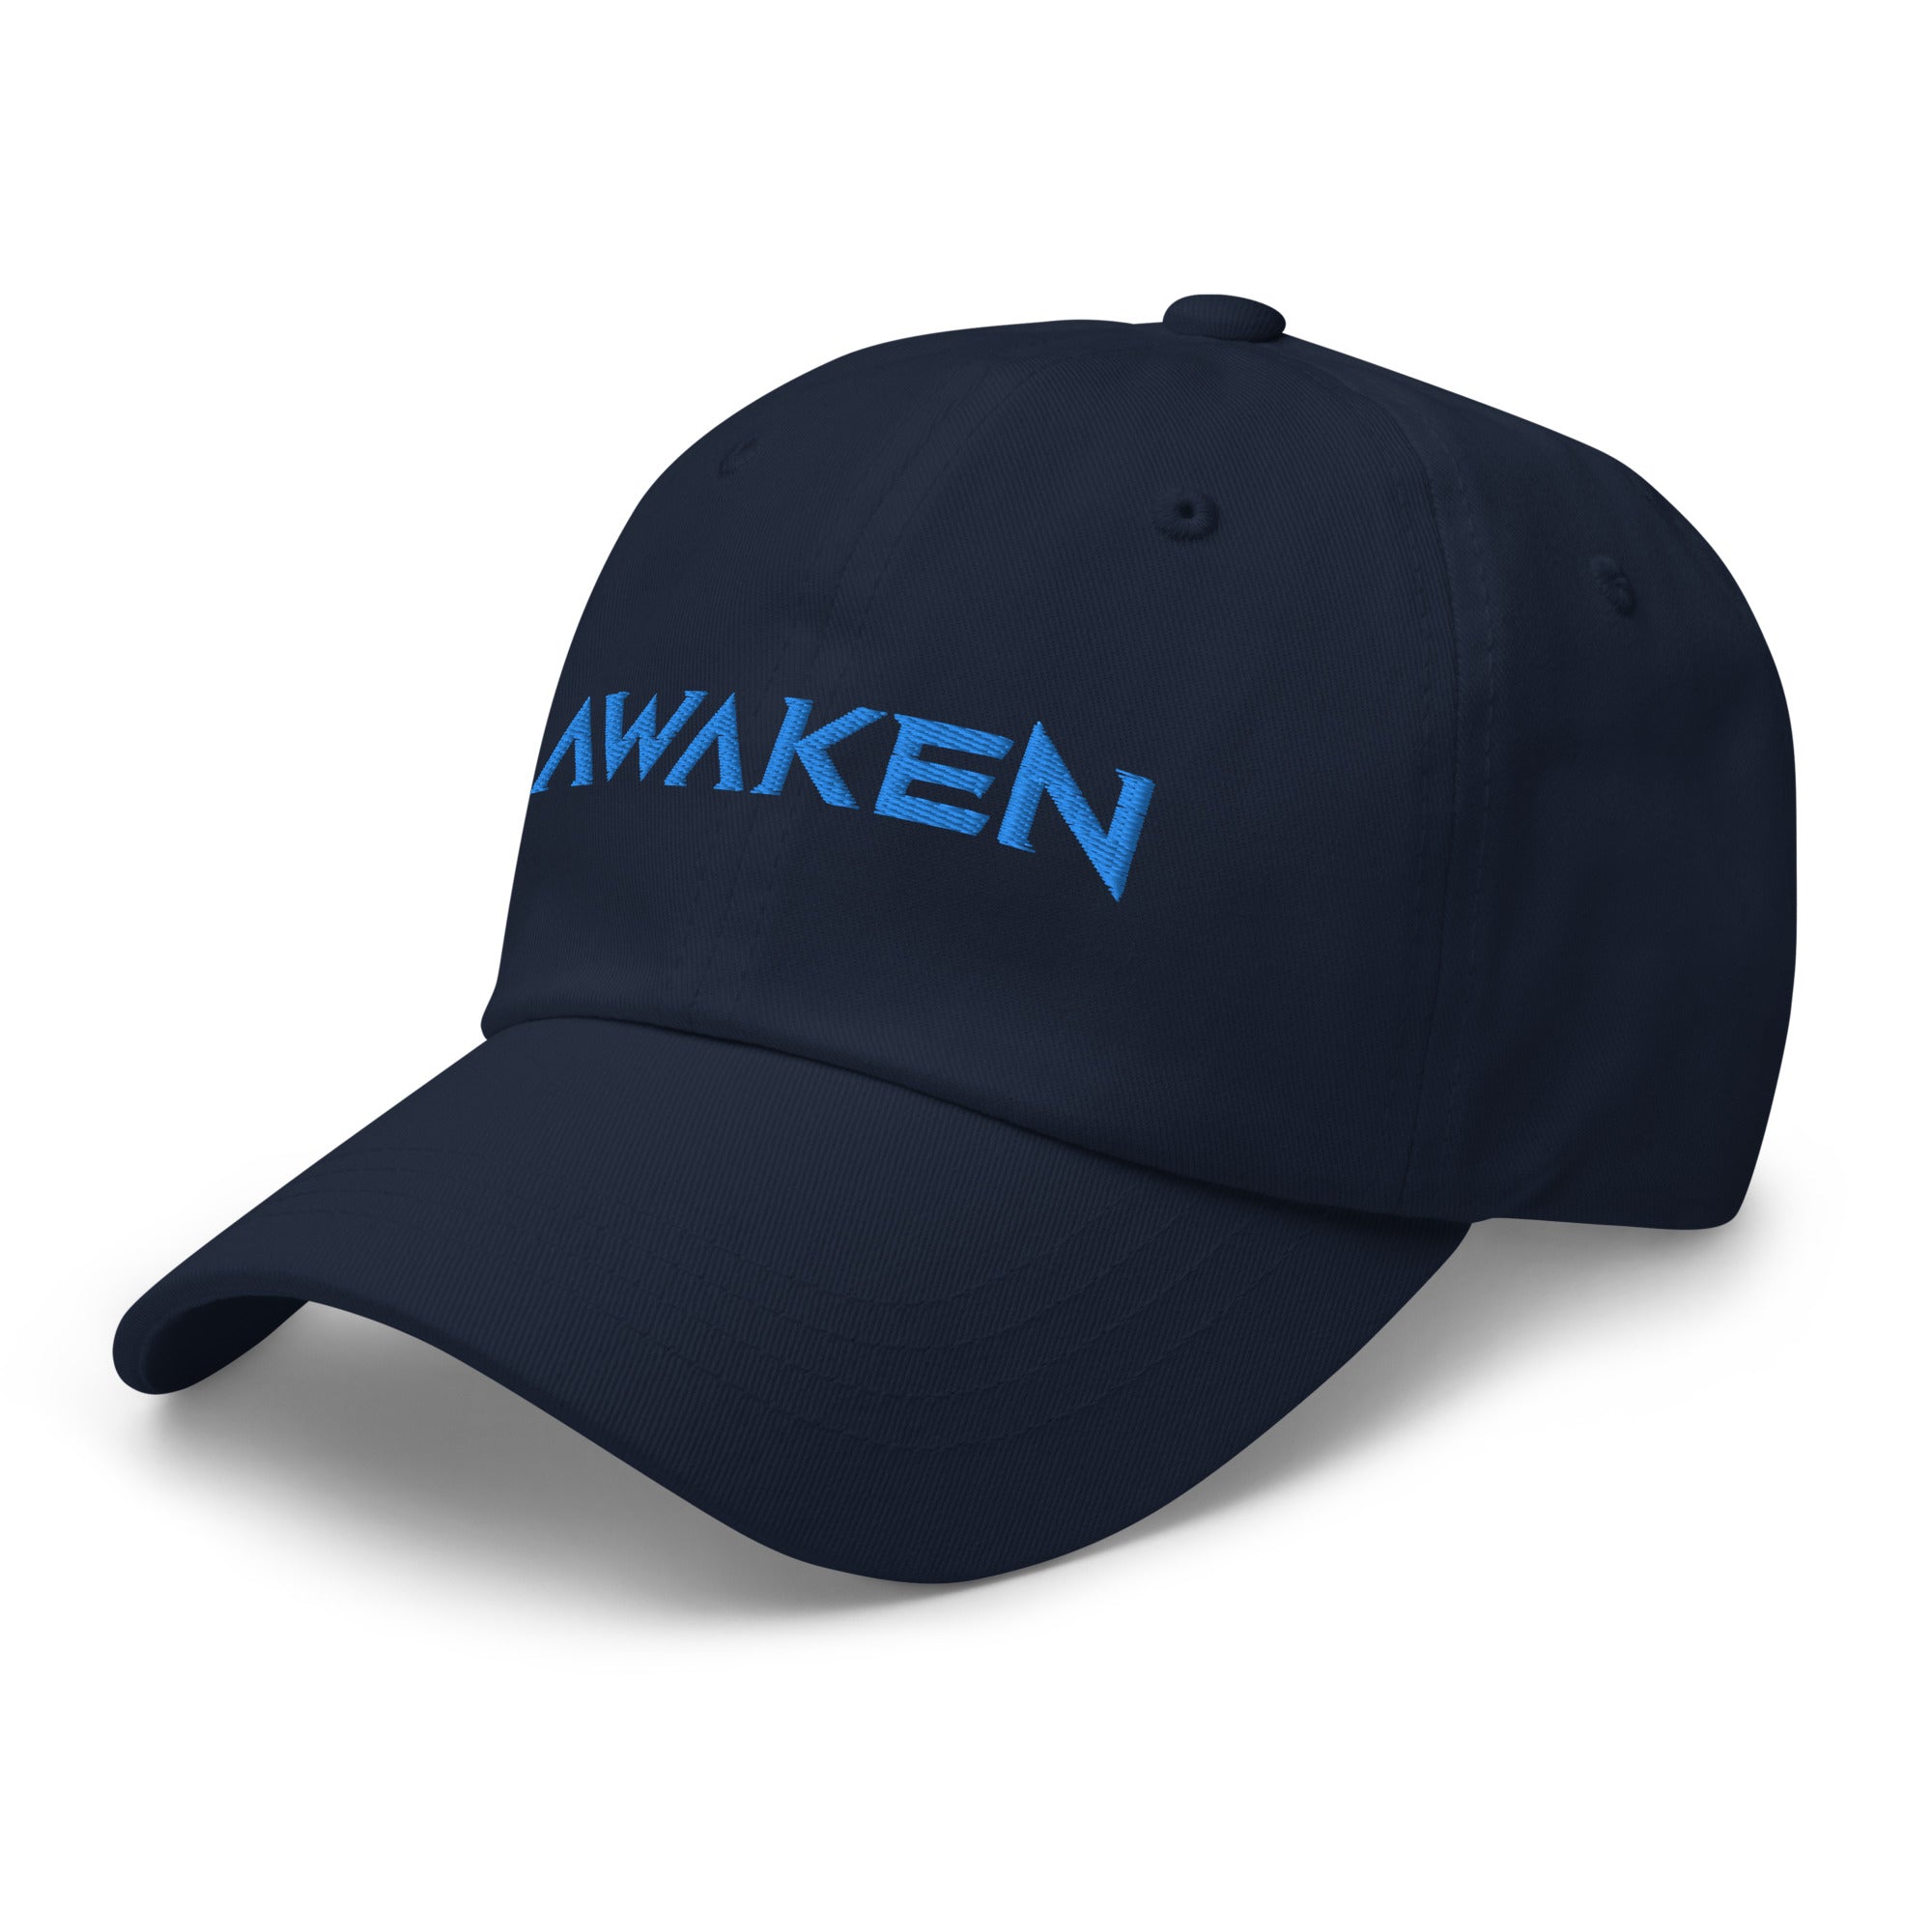 THR Awaken | Embroidered Hat